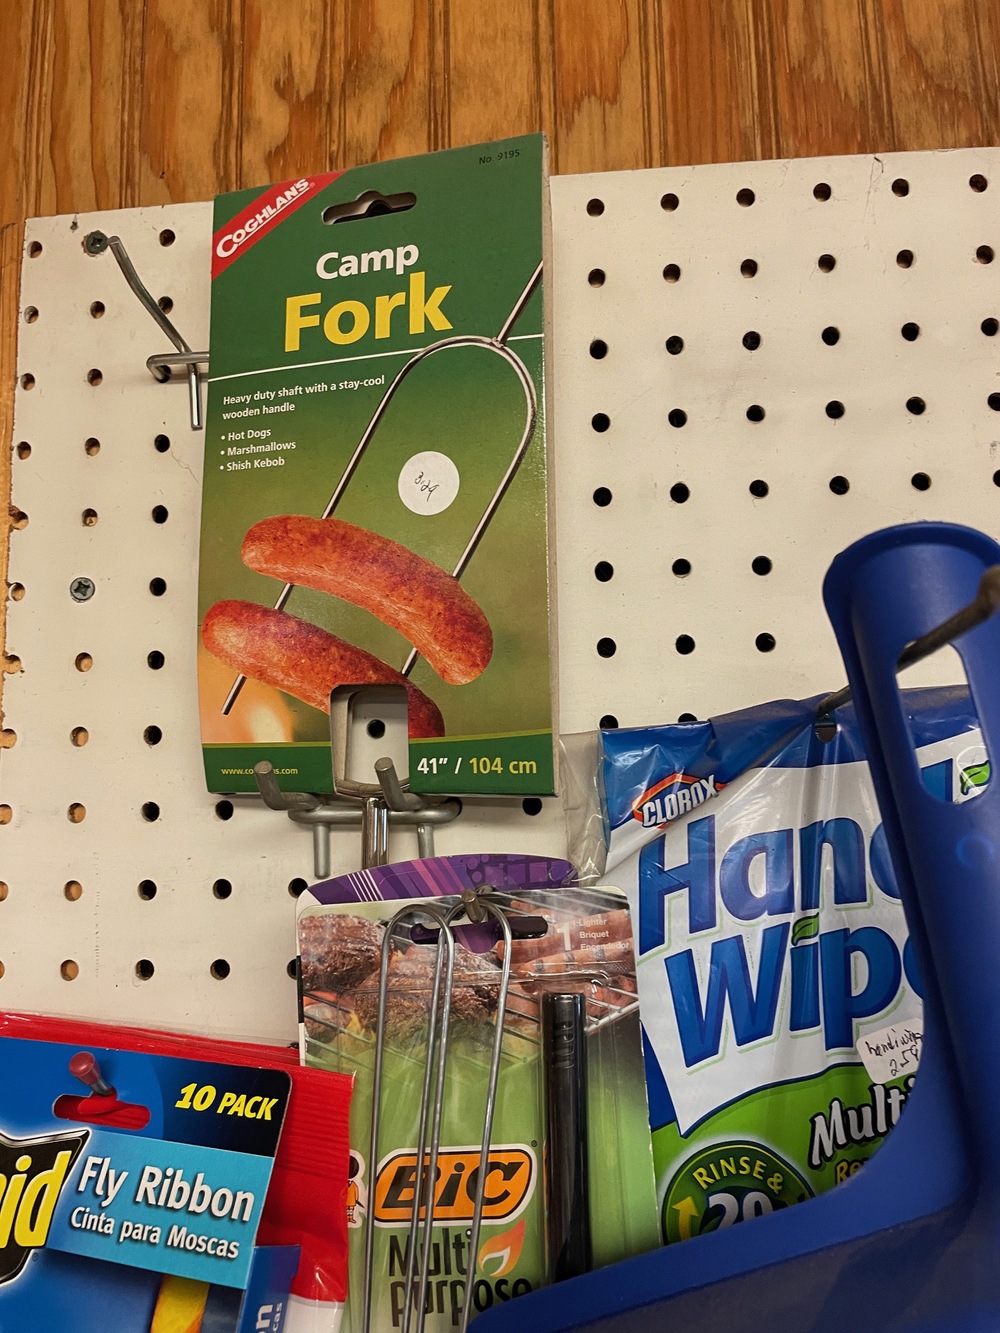 Camp fork